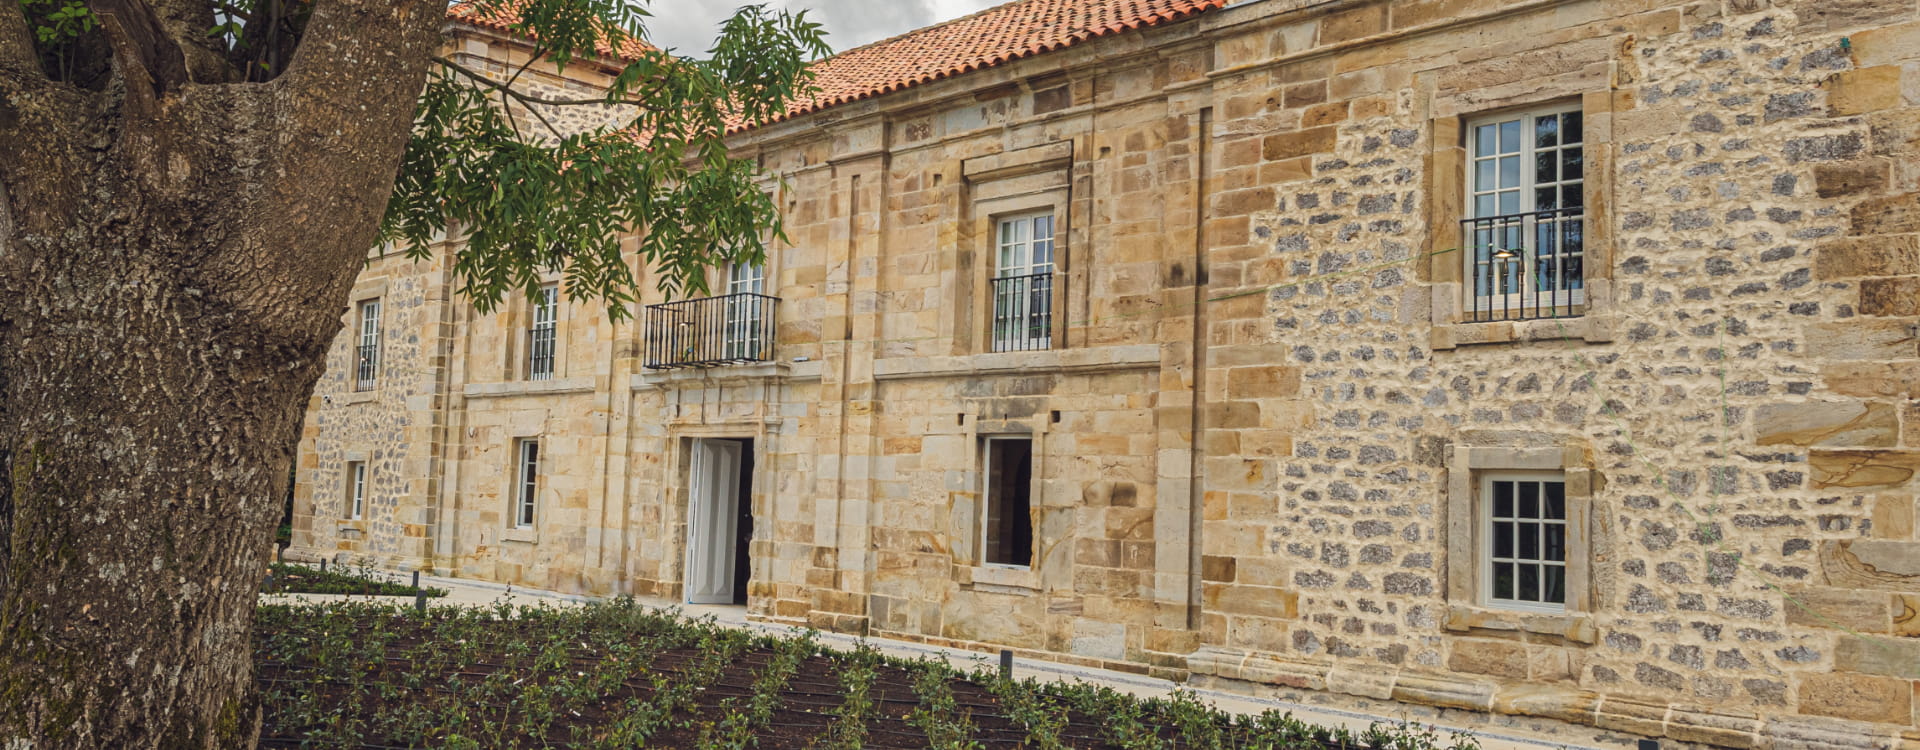 Imagen de la fachada exterior del Palacio de los Acevedo